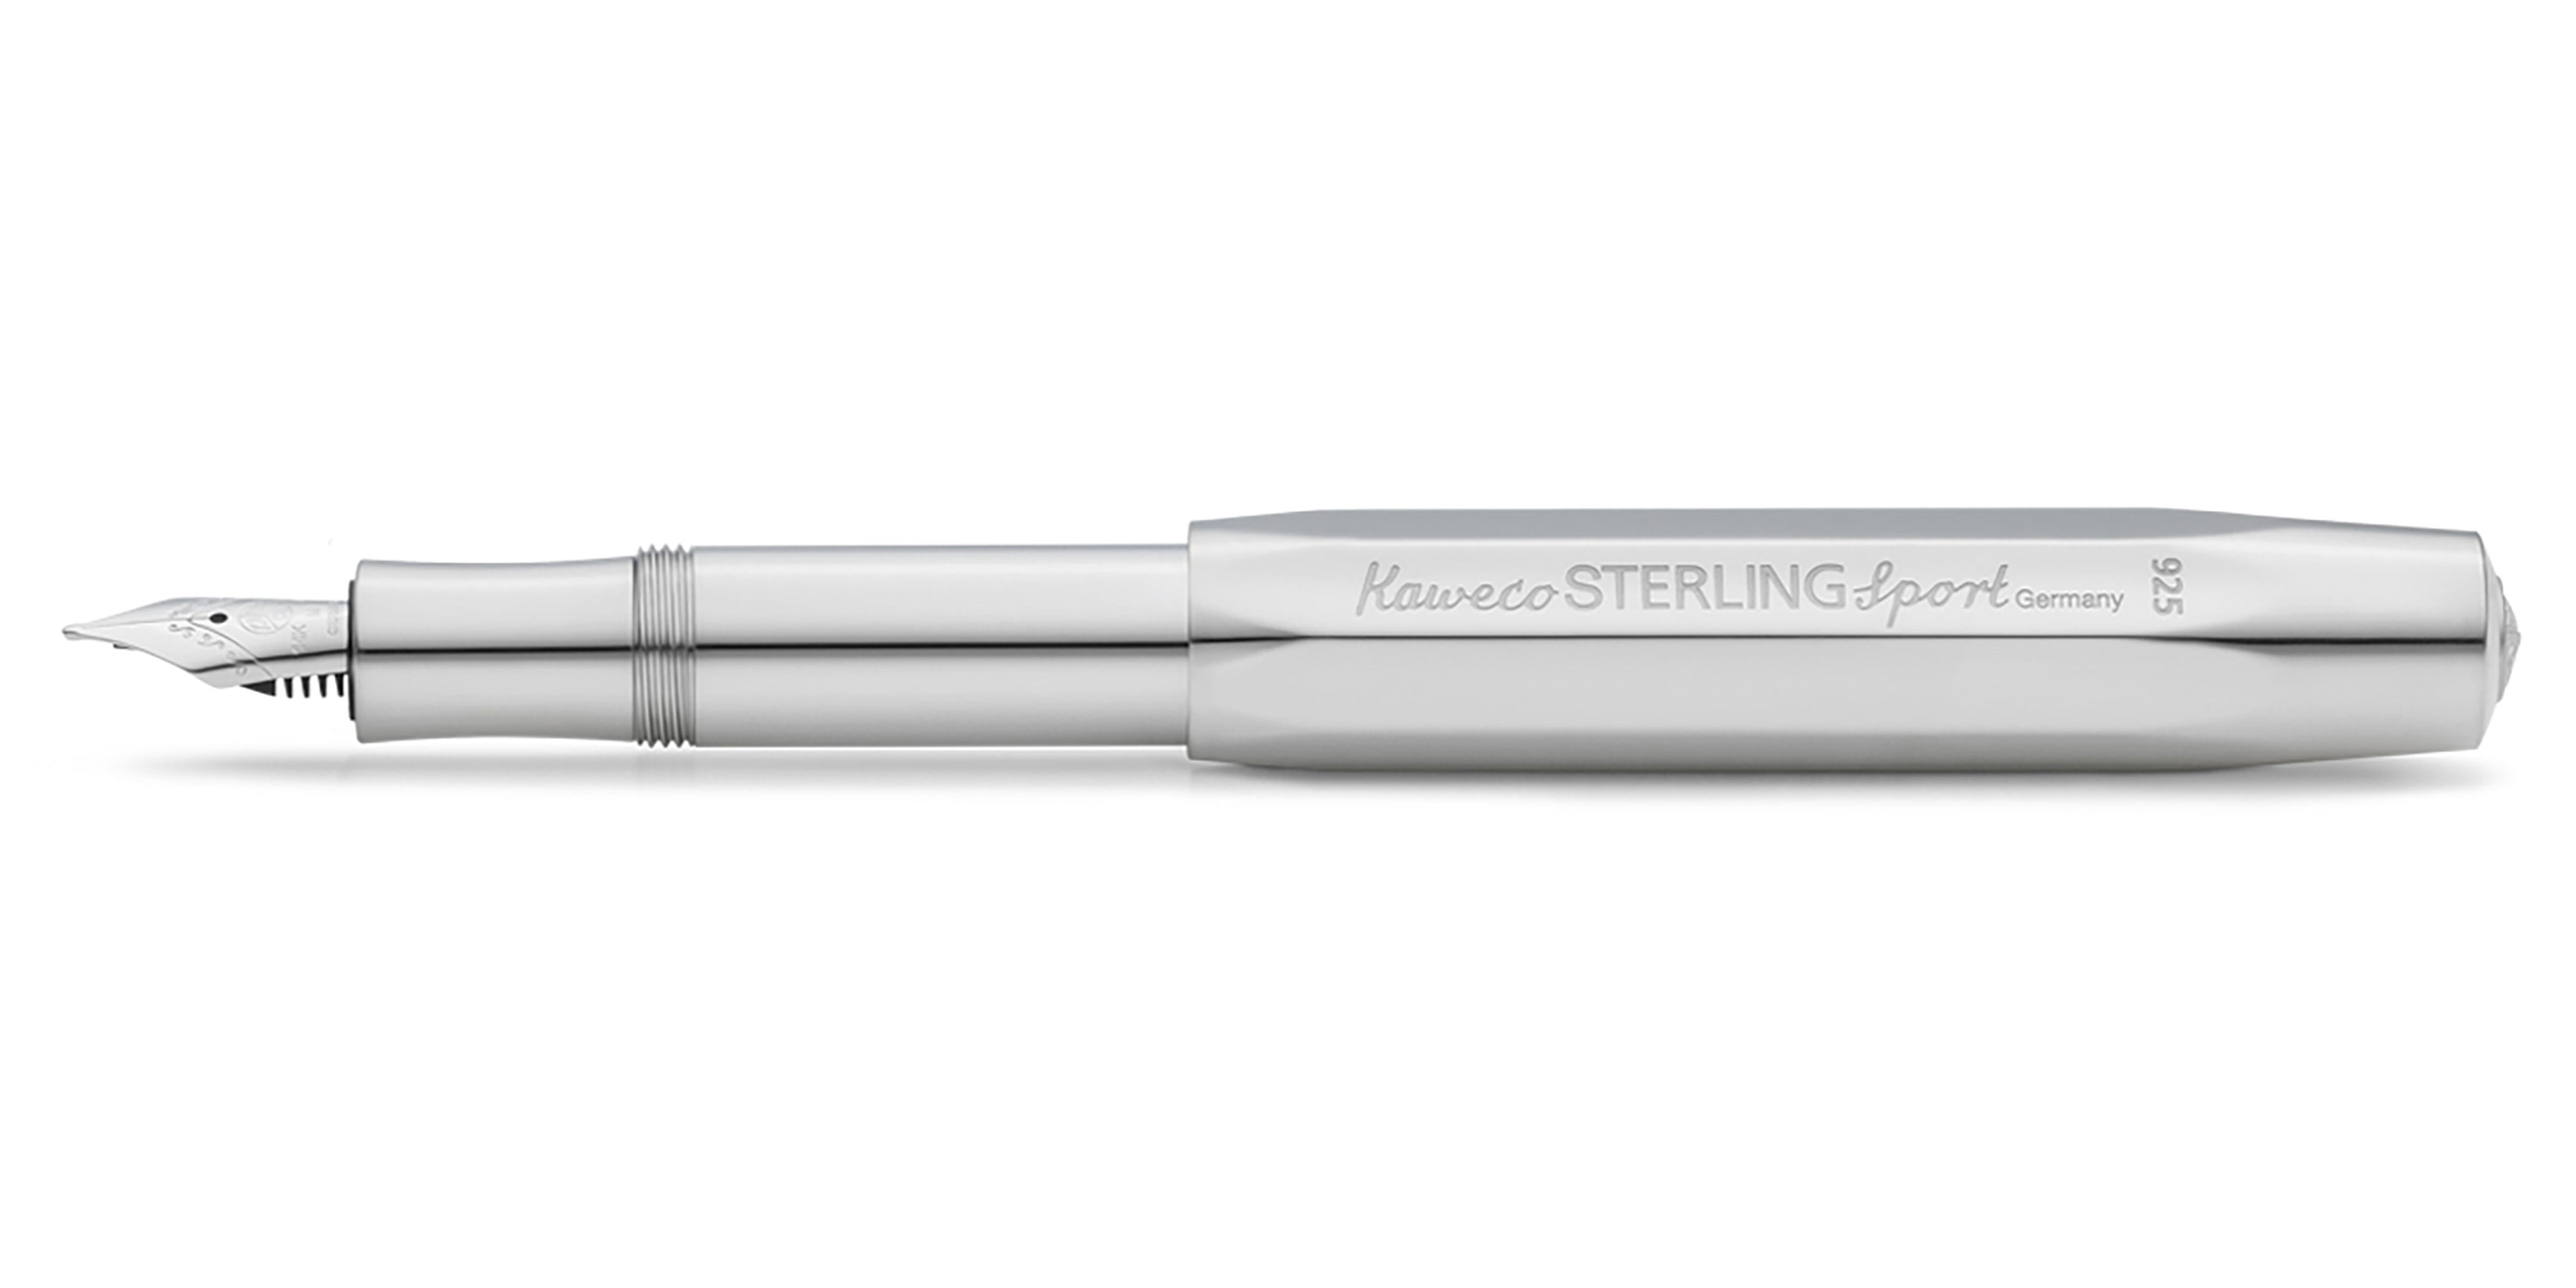 Kaweco STERLING Sport fountain pen